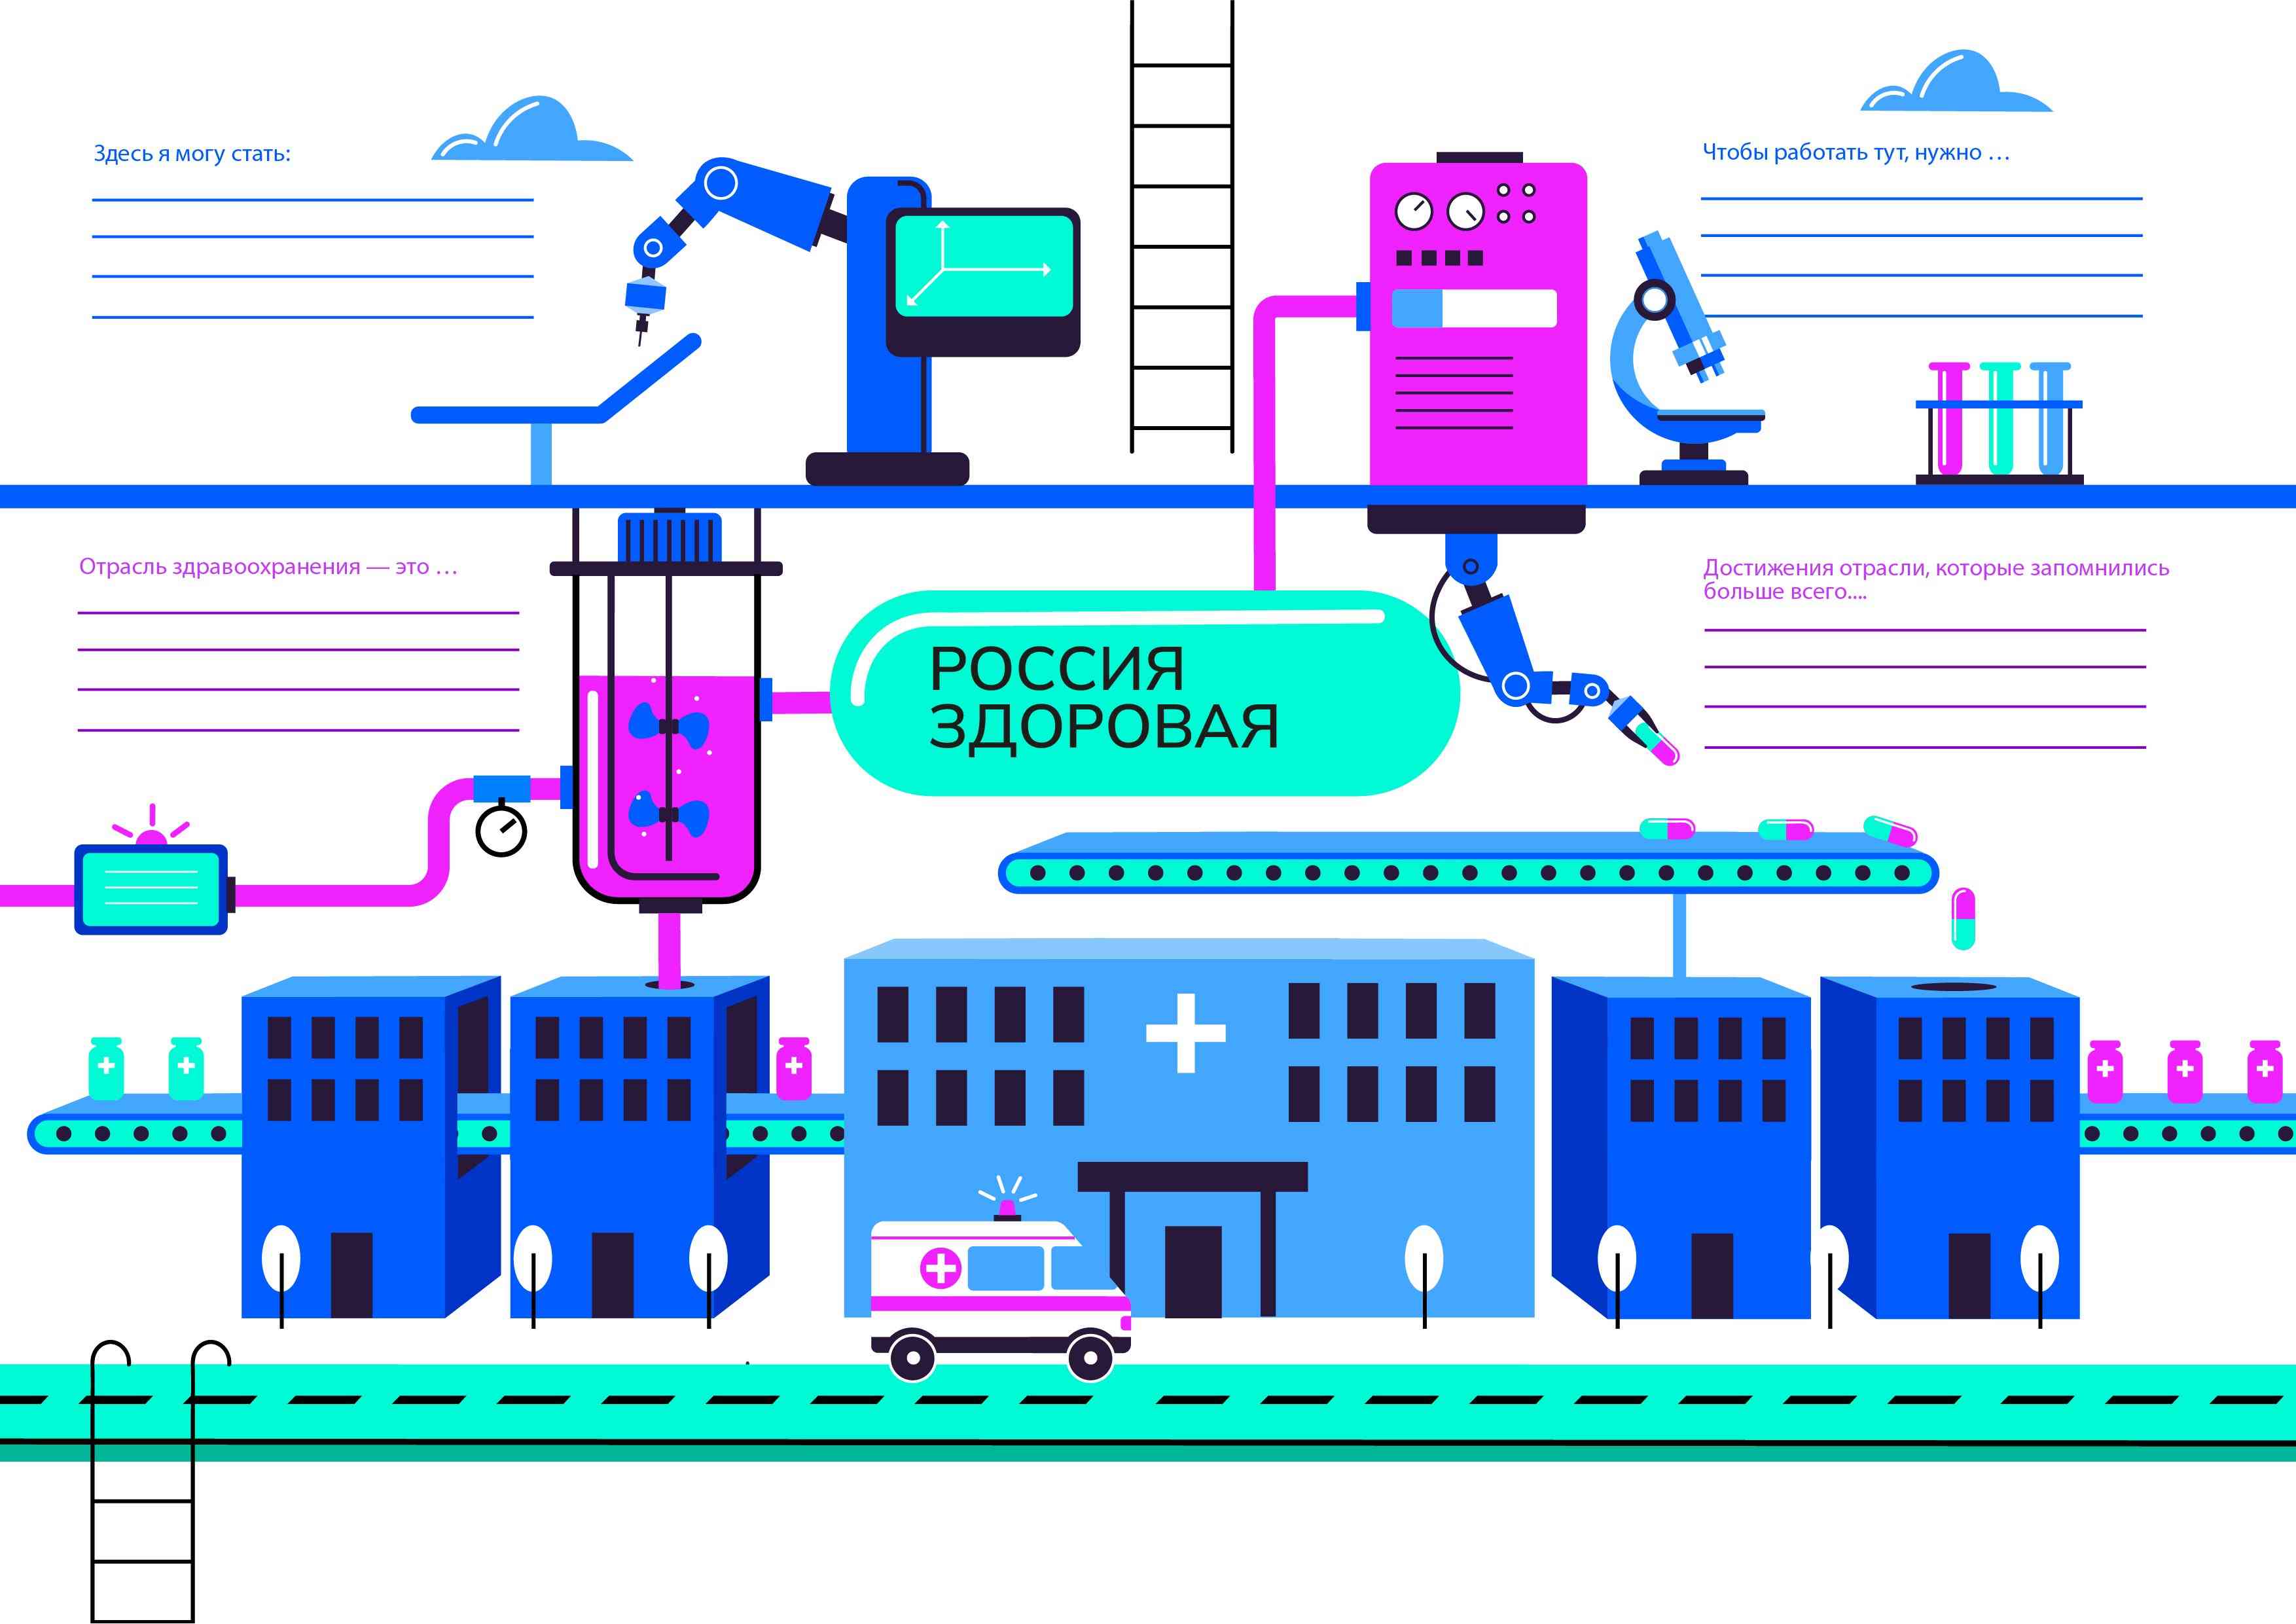 Профориентационное занятие «Россия здоровая: узнаю о профессиях и достижениях страны в области медицины и здравоохранения».